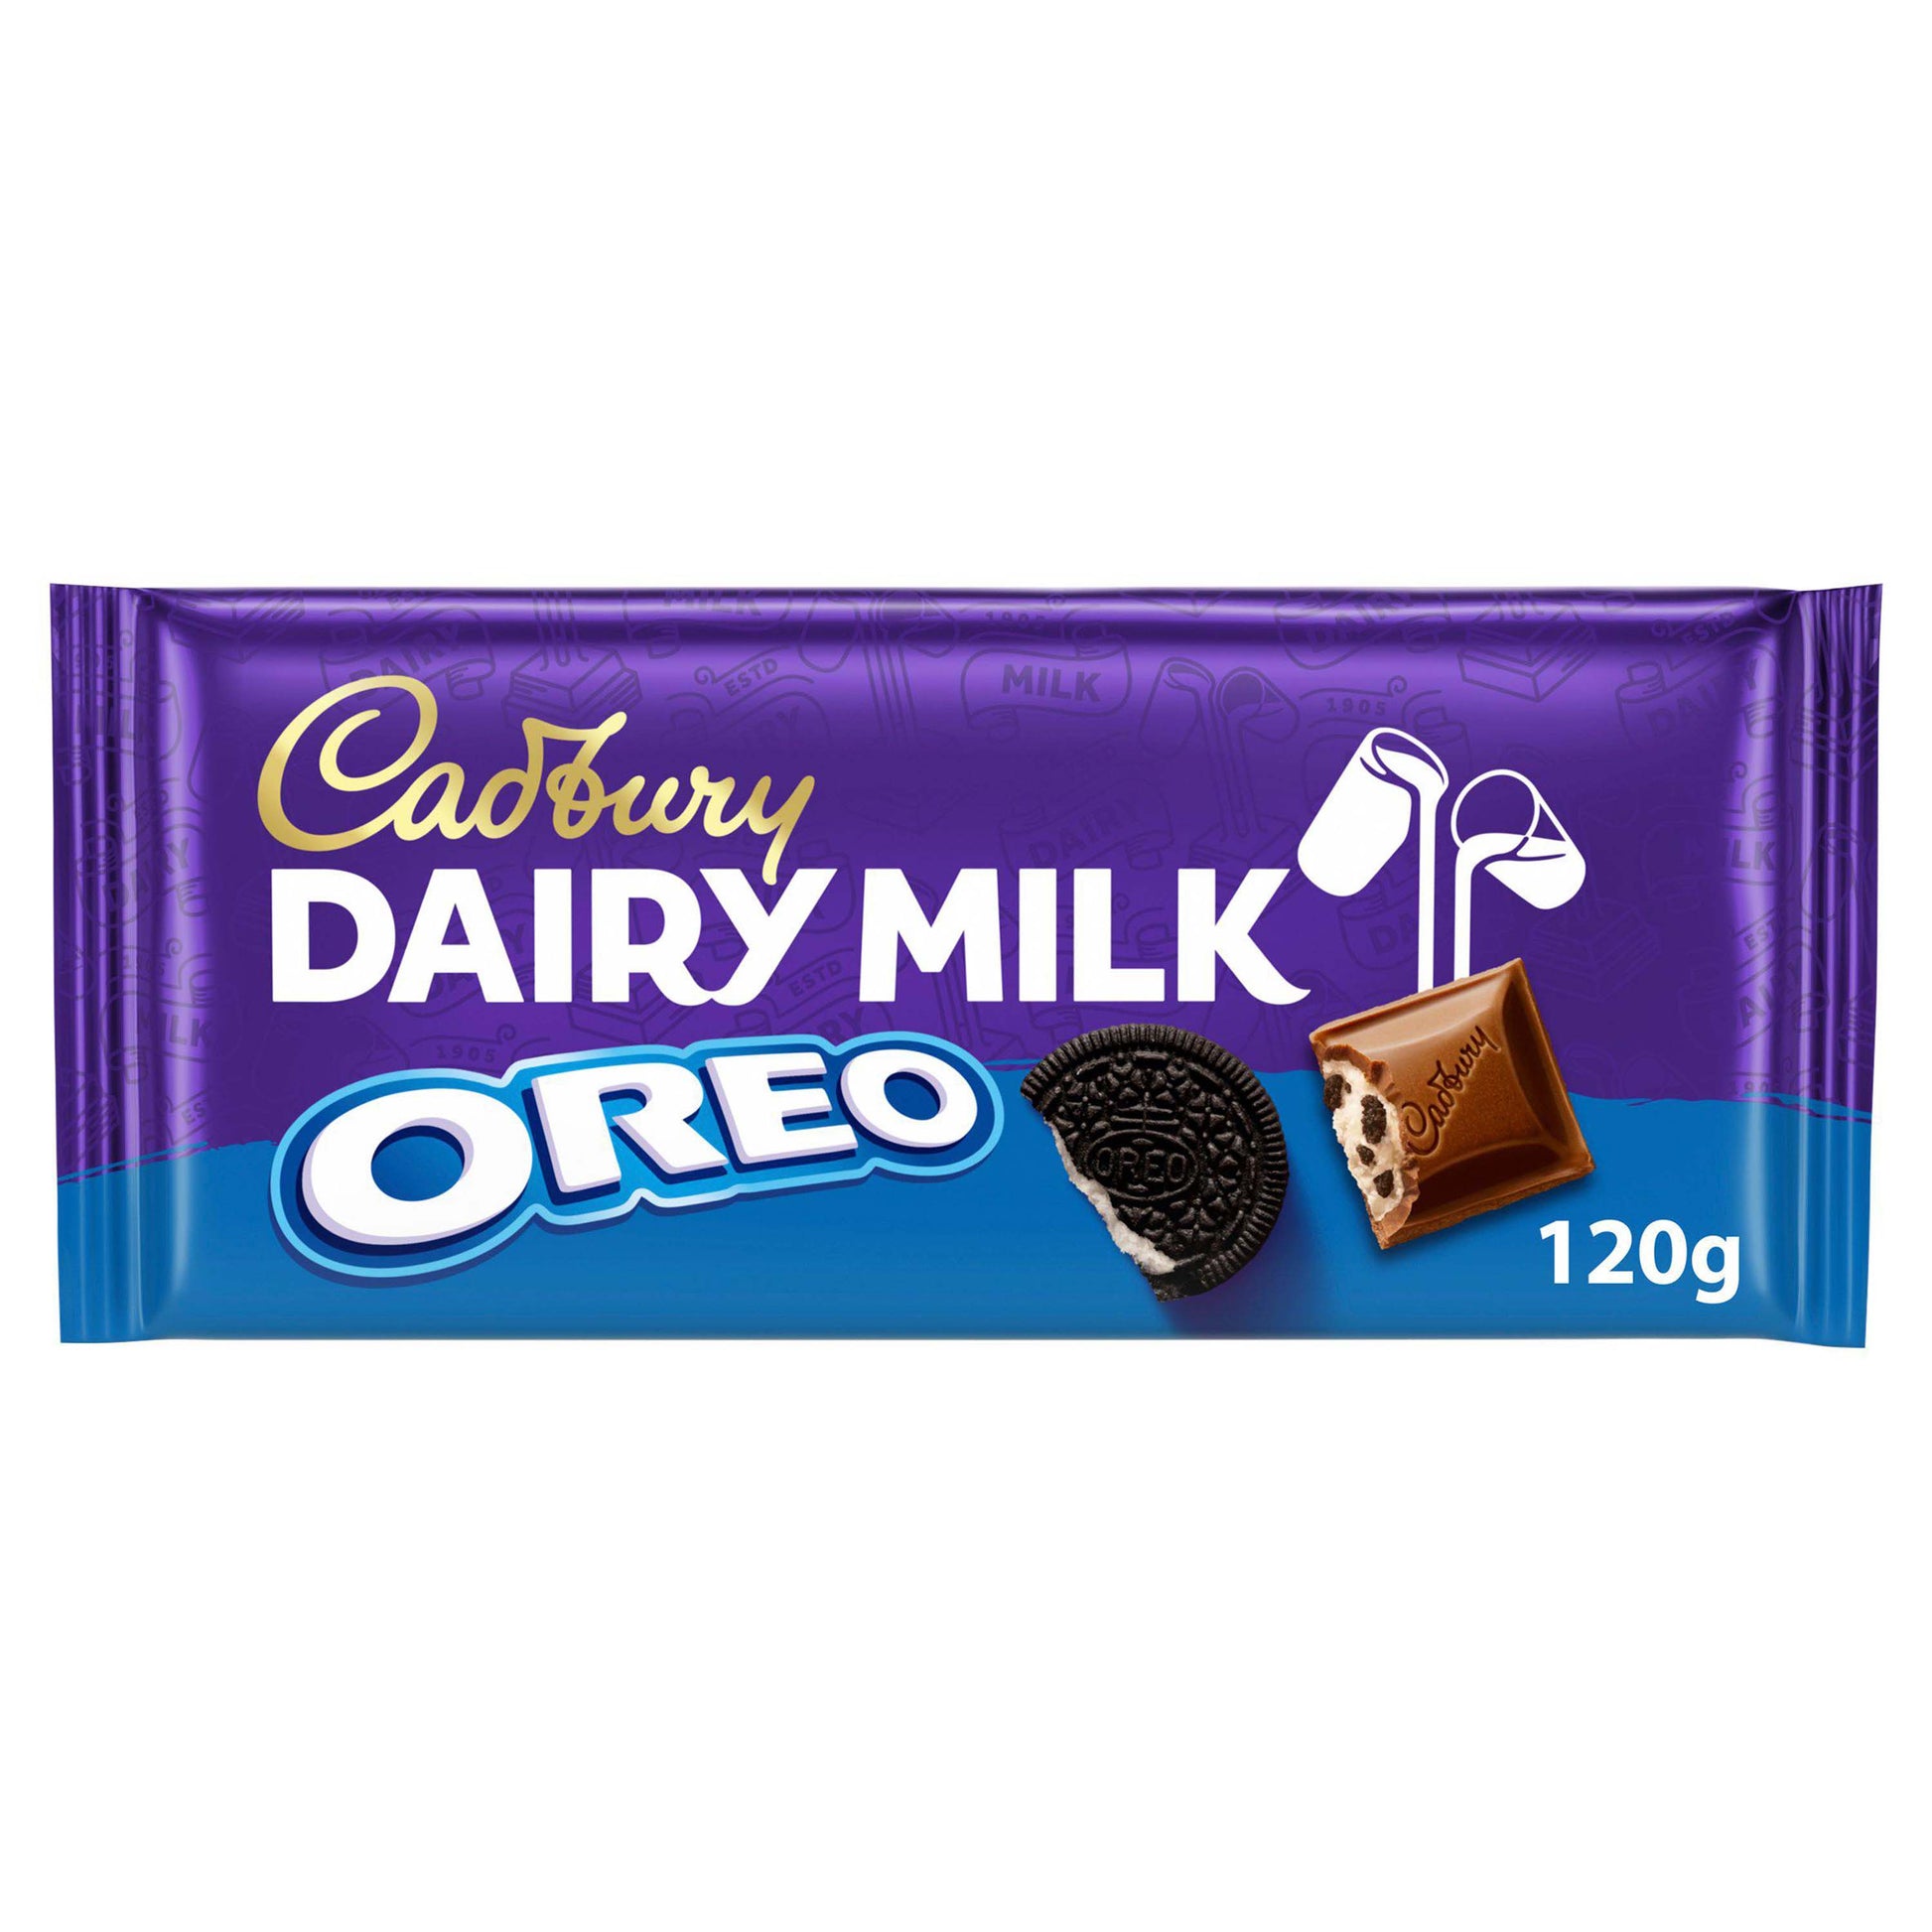 Cadbury Dairy Milk with Oreo Chocolate Bar - 120g - Oreo Snacks